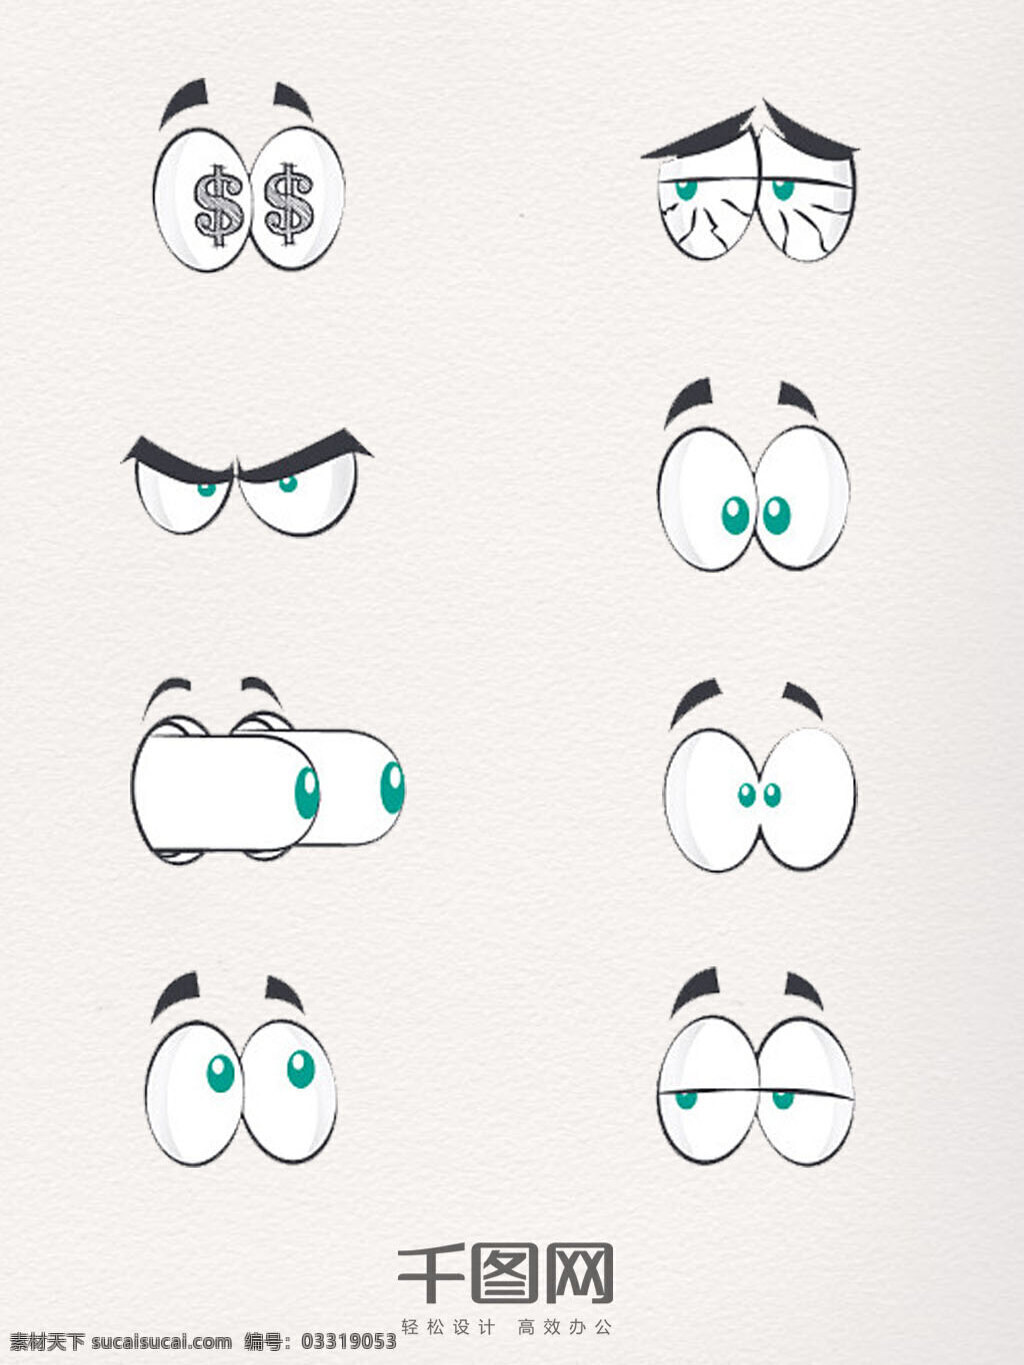 手绘 眼睛 元素 装饰 图案 卡通 创意 夸张 线描 表情 五官元素